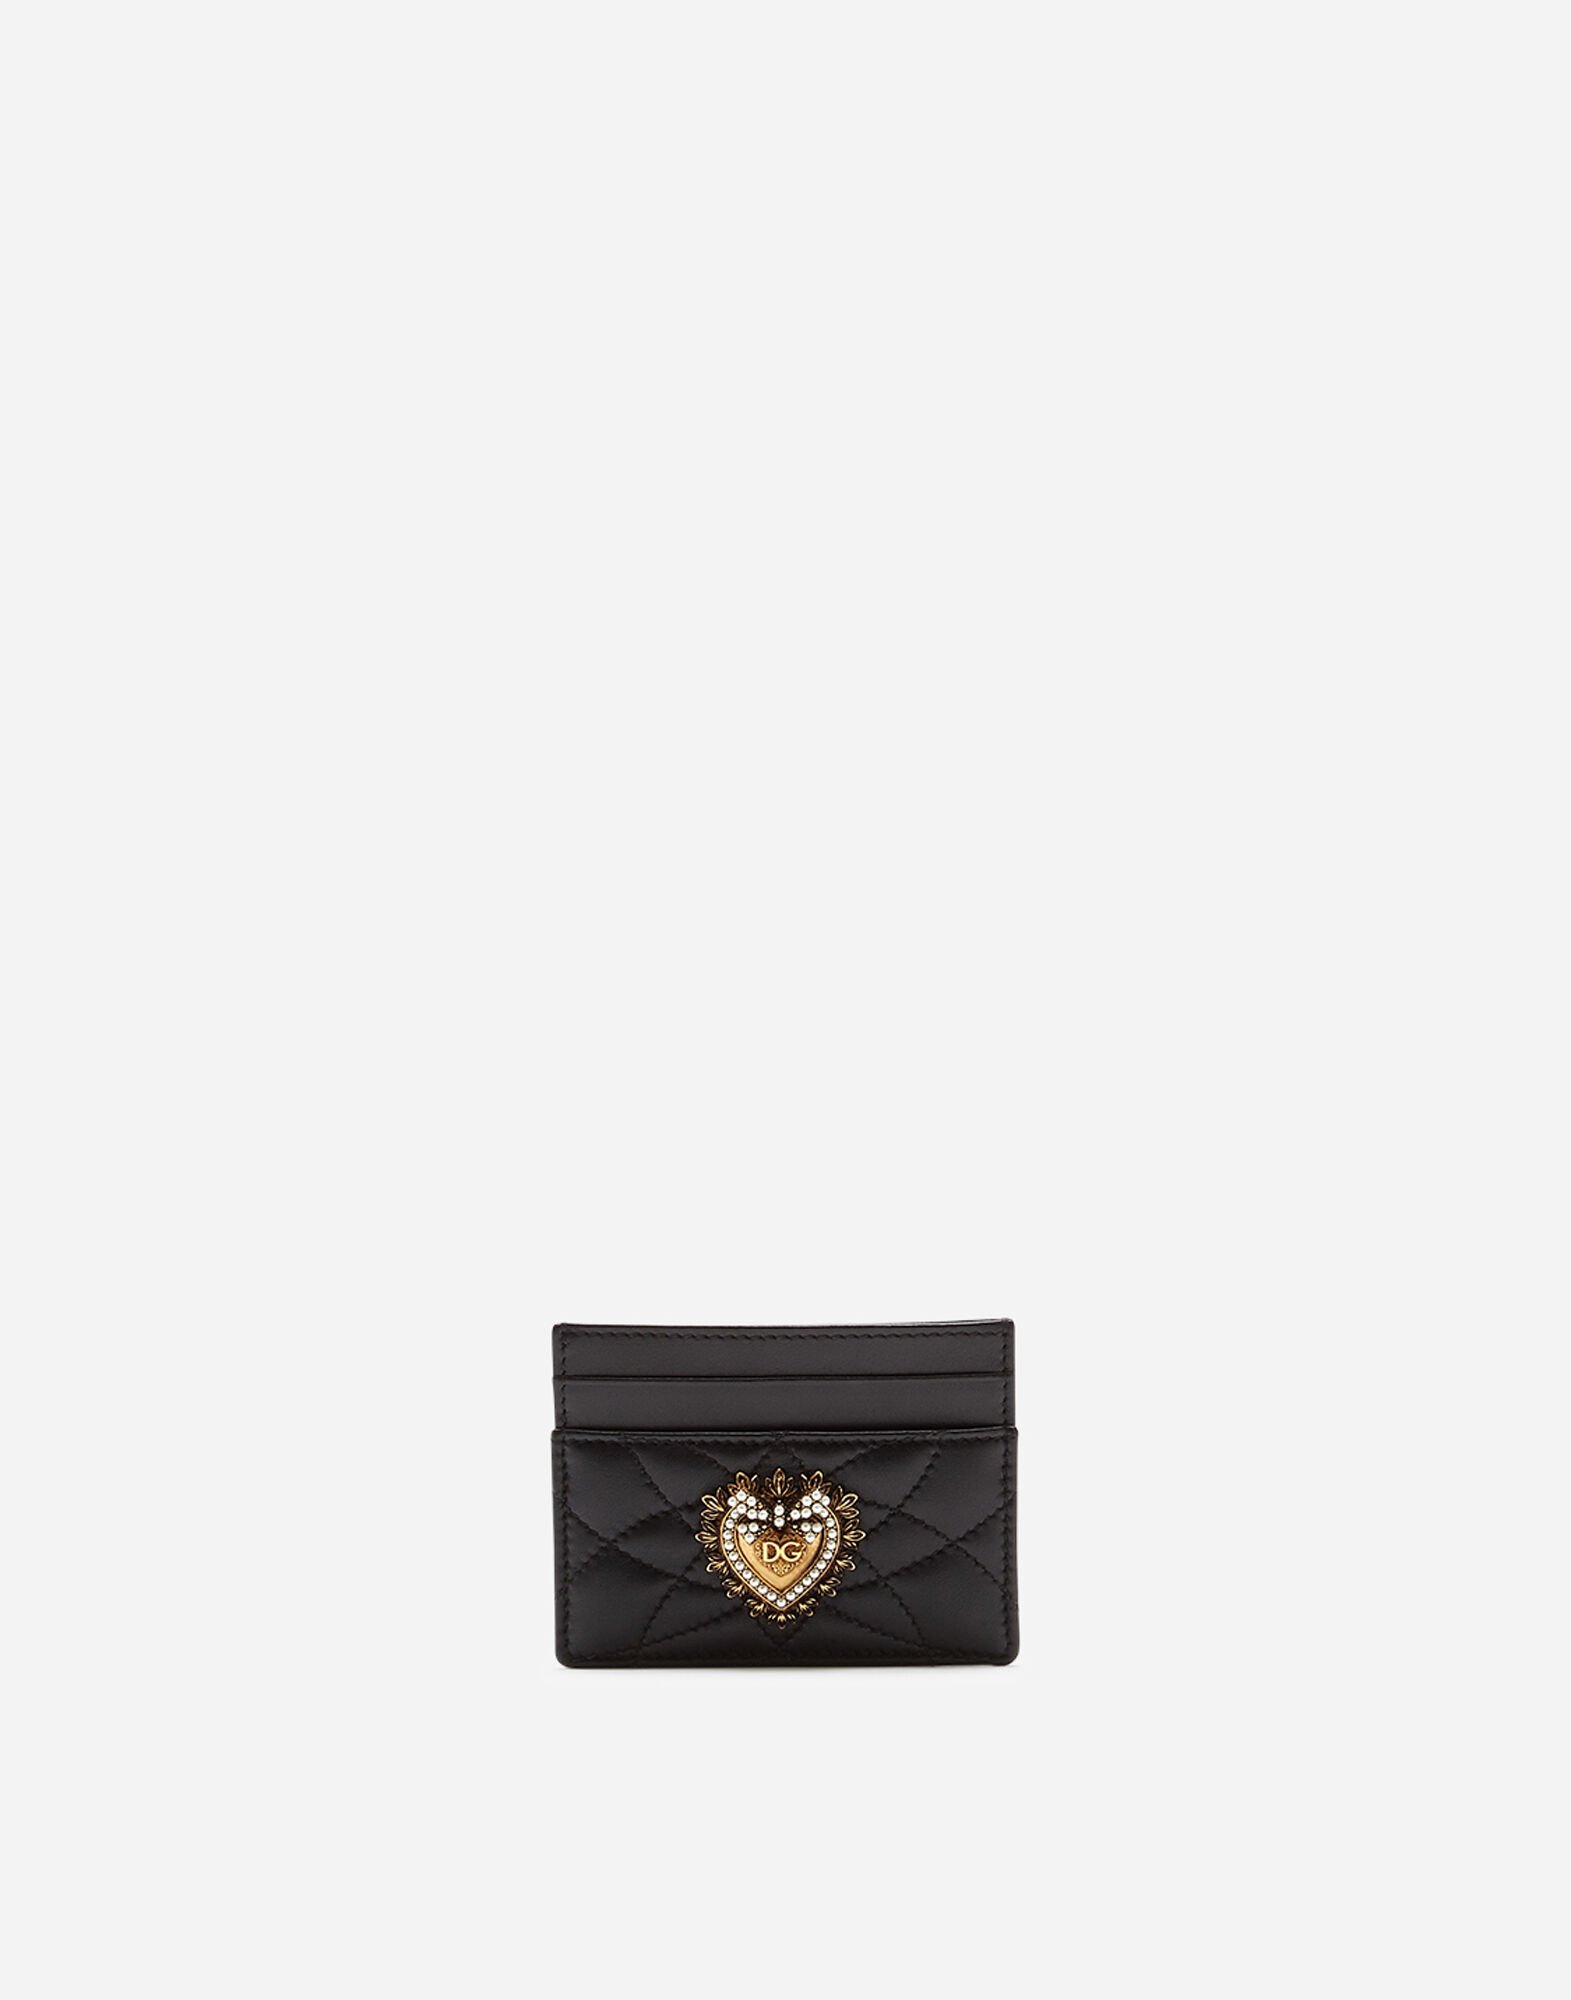 Dolce & Gabbana Devotion credit card holder Black BI0473AG081